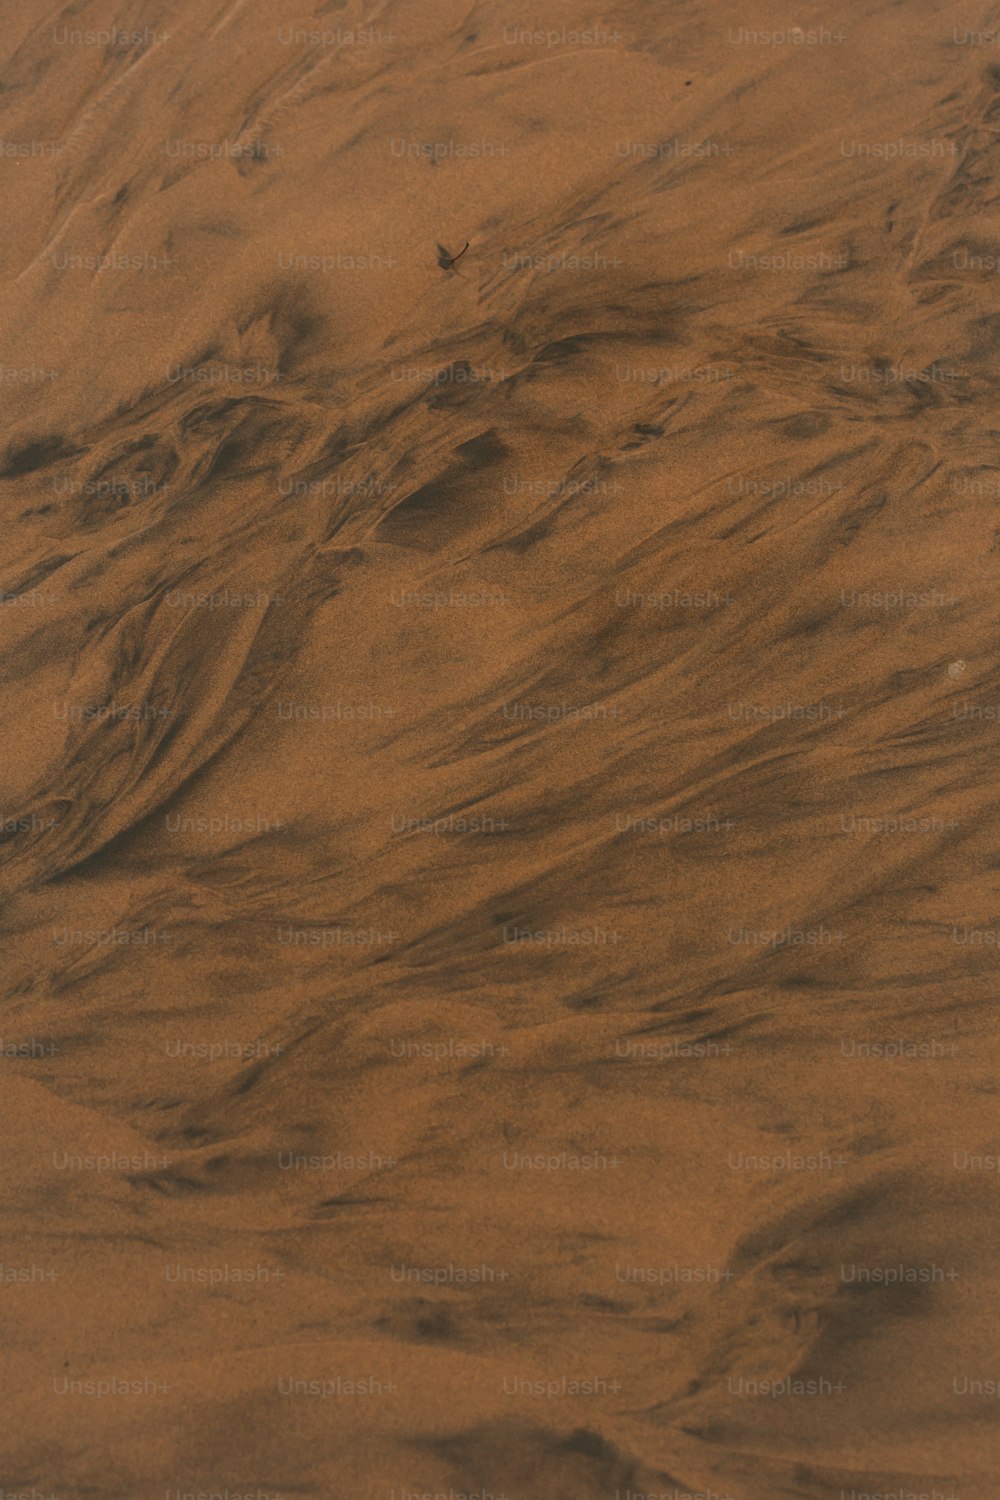 Un oiseau survolant une plage de sable recouverte de sable